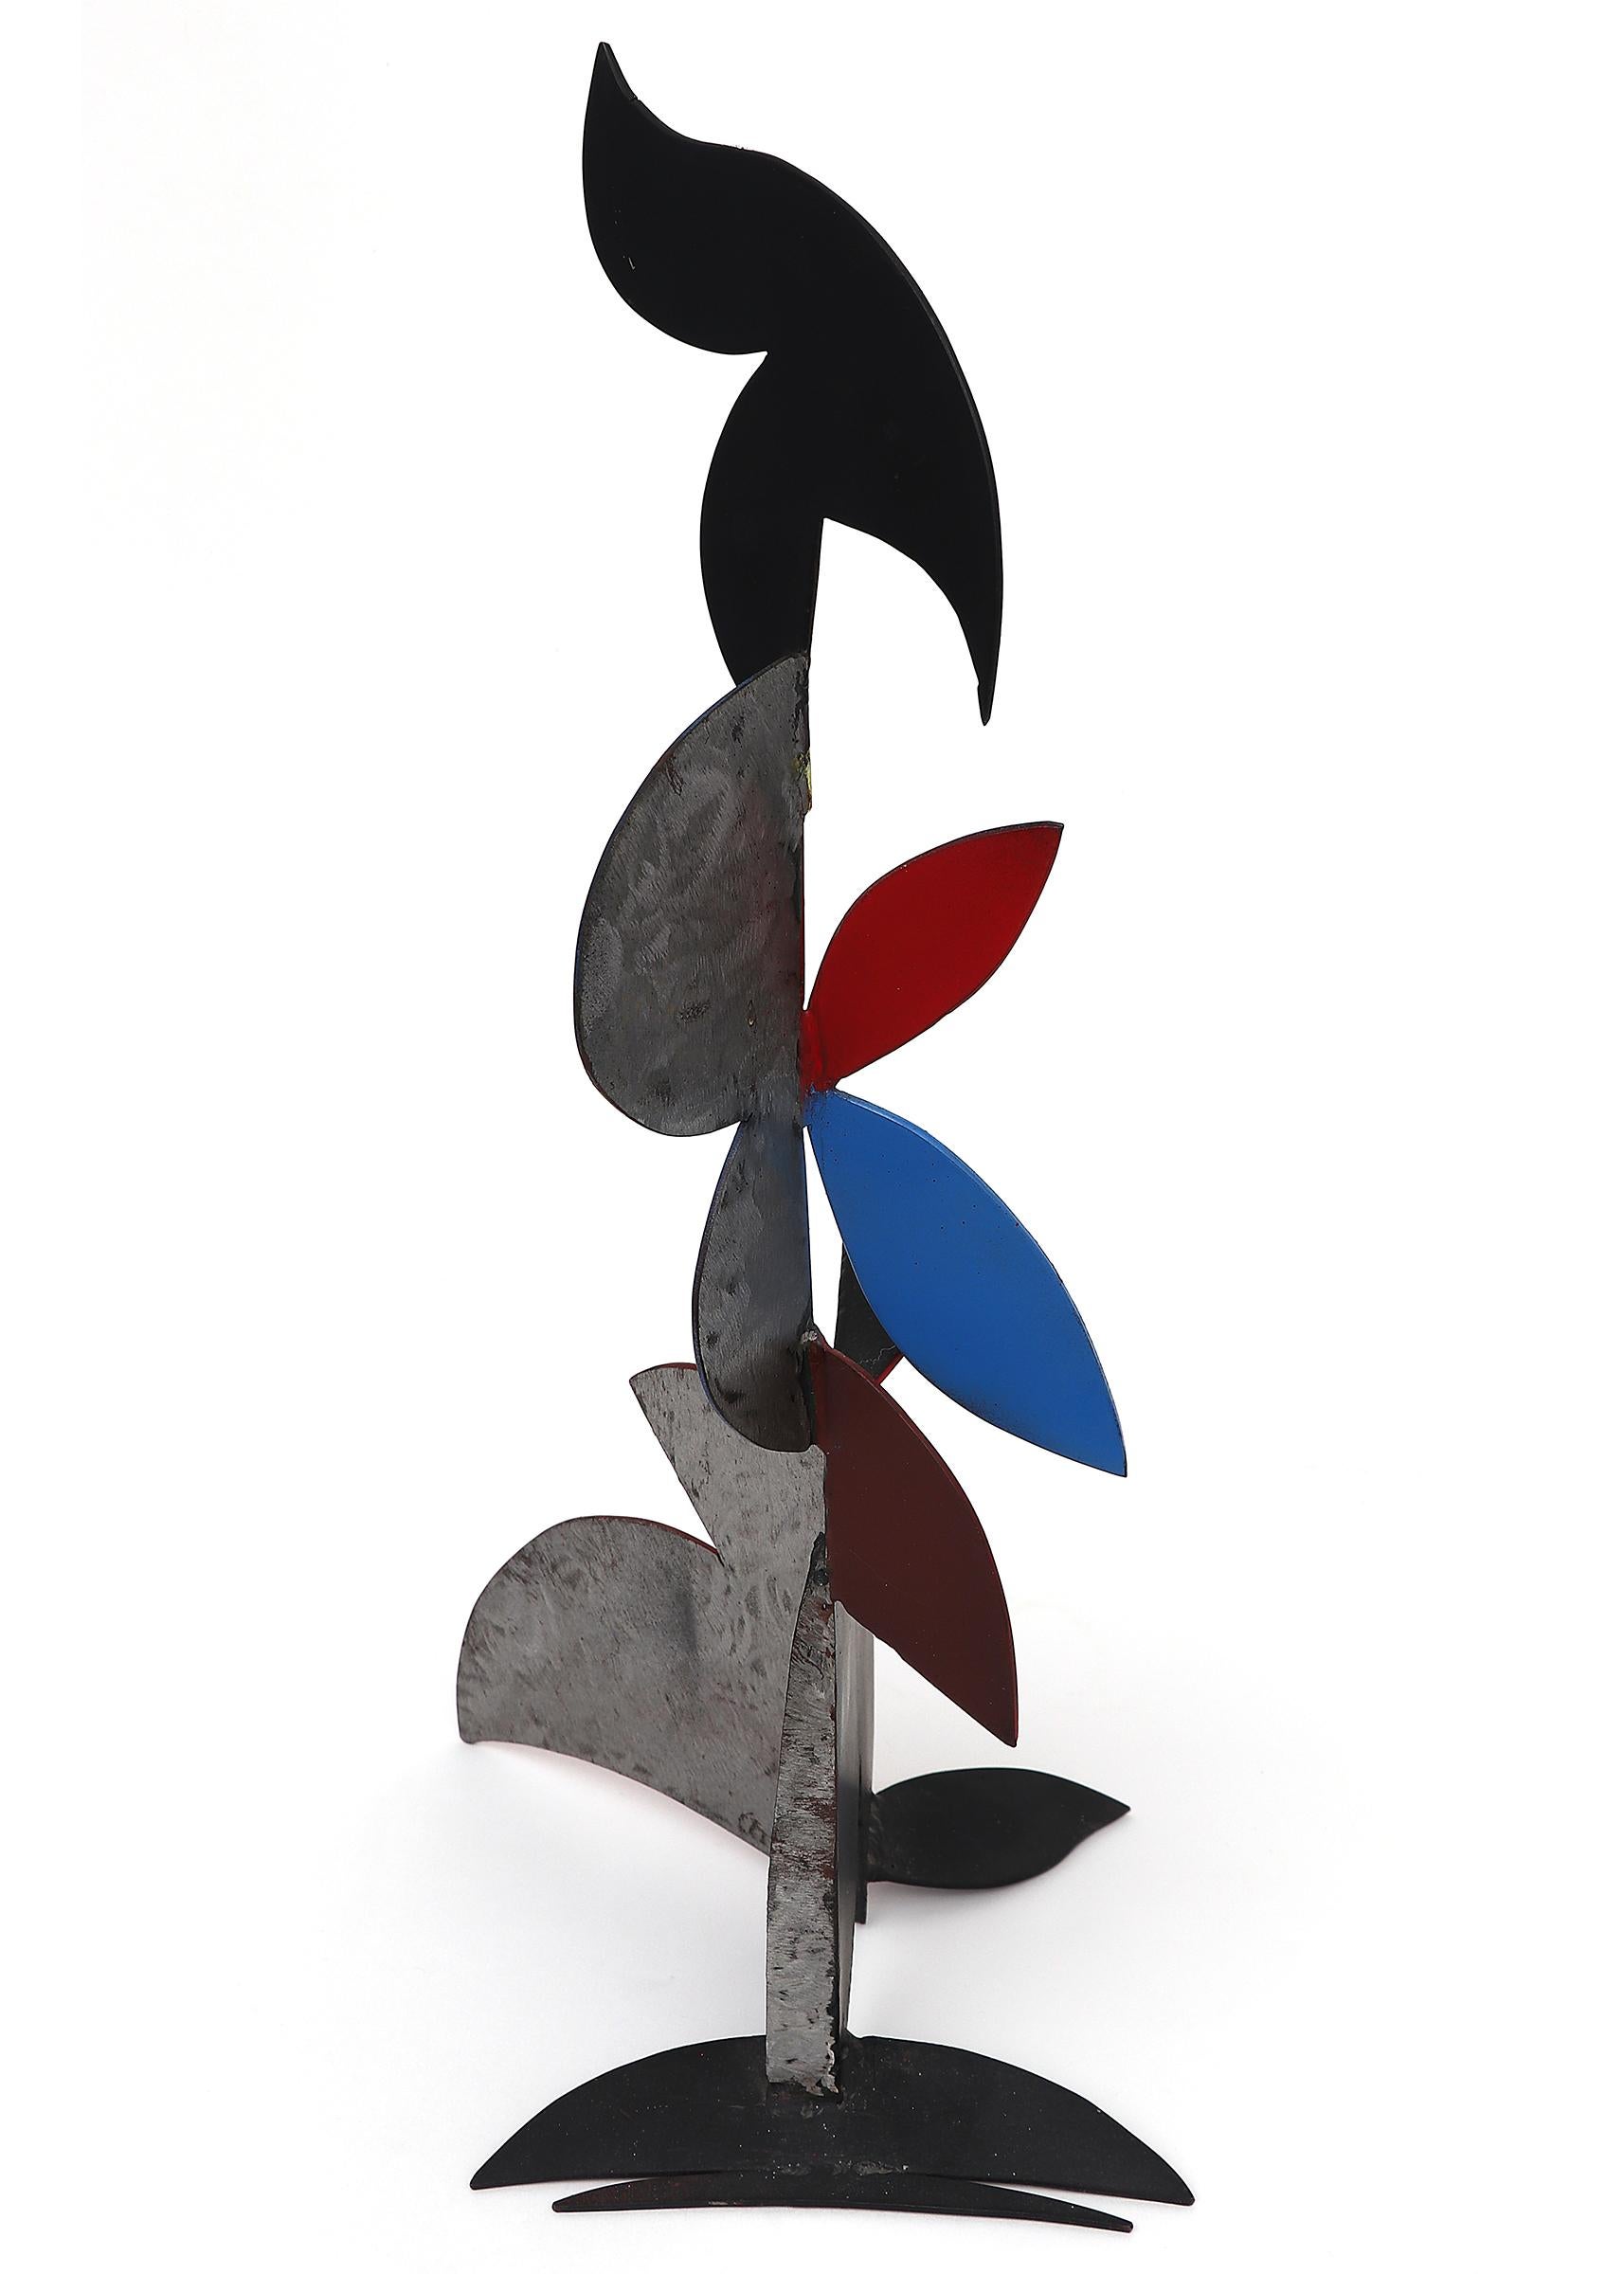 Abstrakte bemalte Metallskulptur von Edward (Eduardo) Arcenio Chavez (1917-1995). Gemalt in den drei Grundfarben: Rot, Blau und Gelb. Die Skulptur misst 16 ½ x 7 x 11 Zoll. 

Über den Künstler:

Geboren 1917
Gestorben 1995

Der in Wagonmound, New